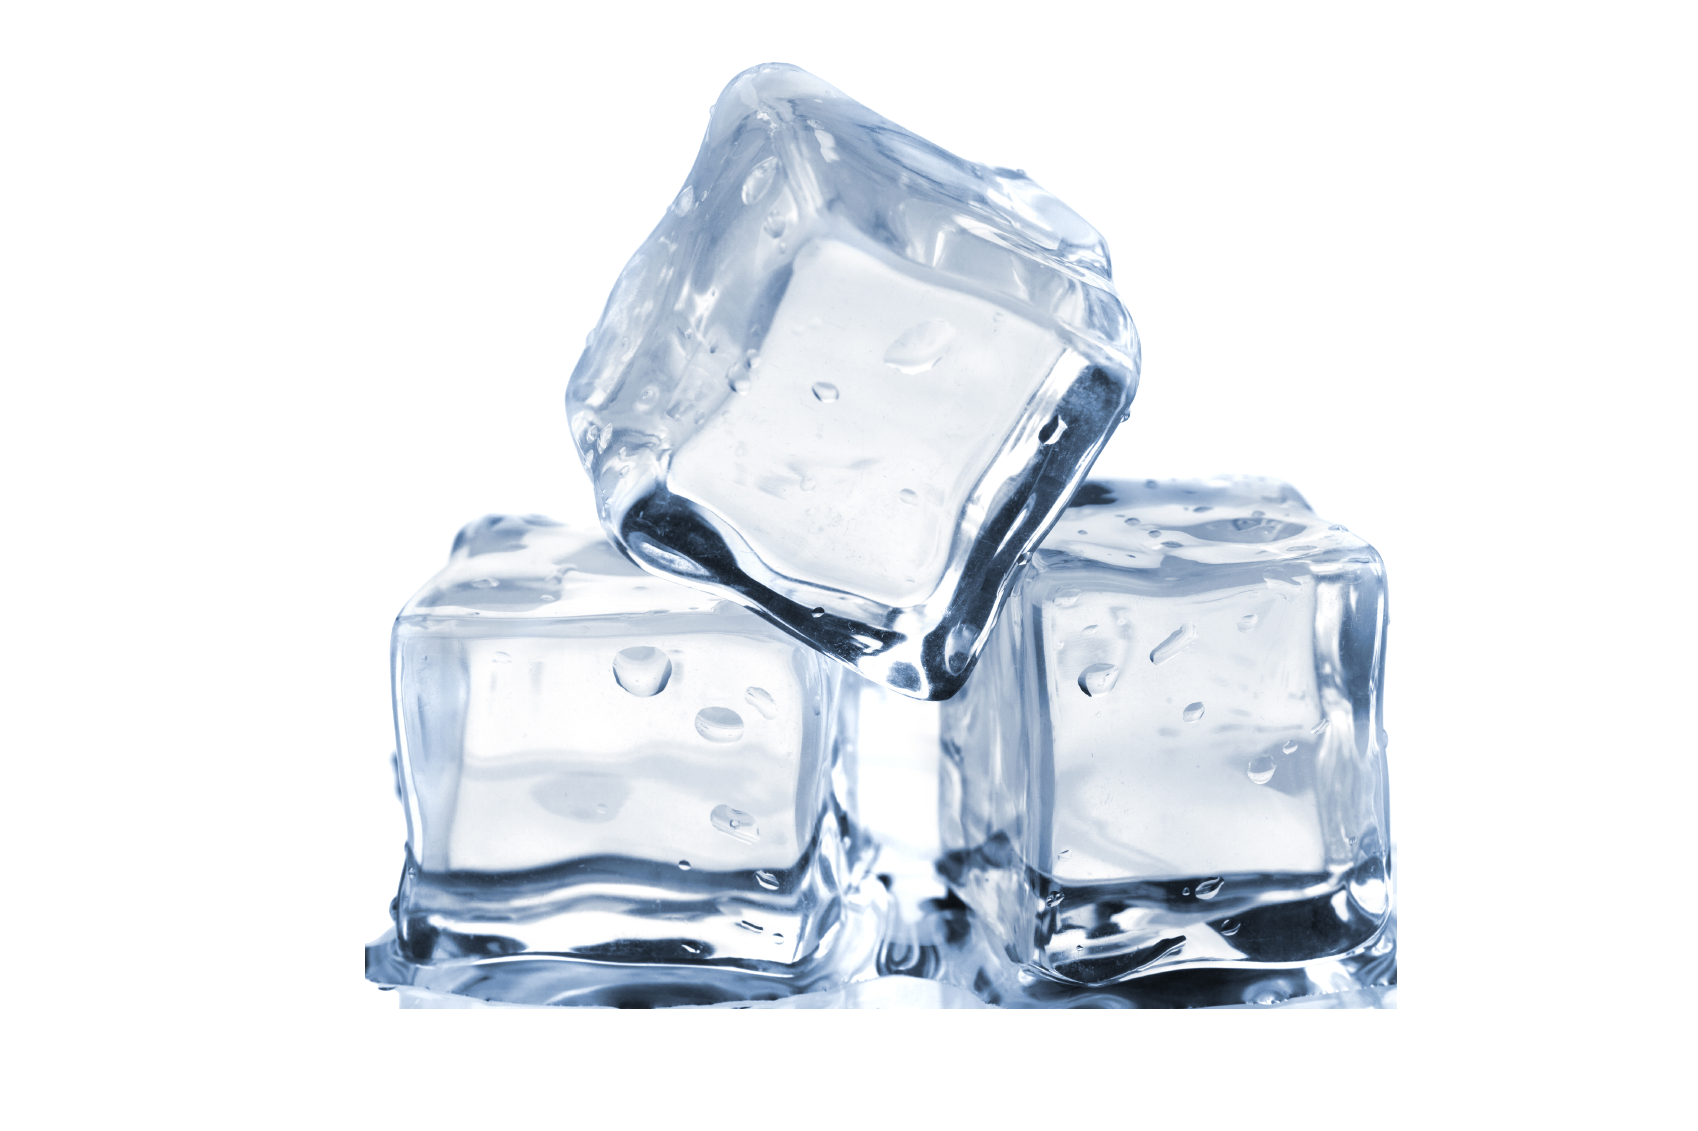 Ice Cube лед. Ice Cube лед Water. Ice Cube кубик льда. Кусок льда. Кубик льда имеющий температуру 0